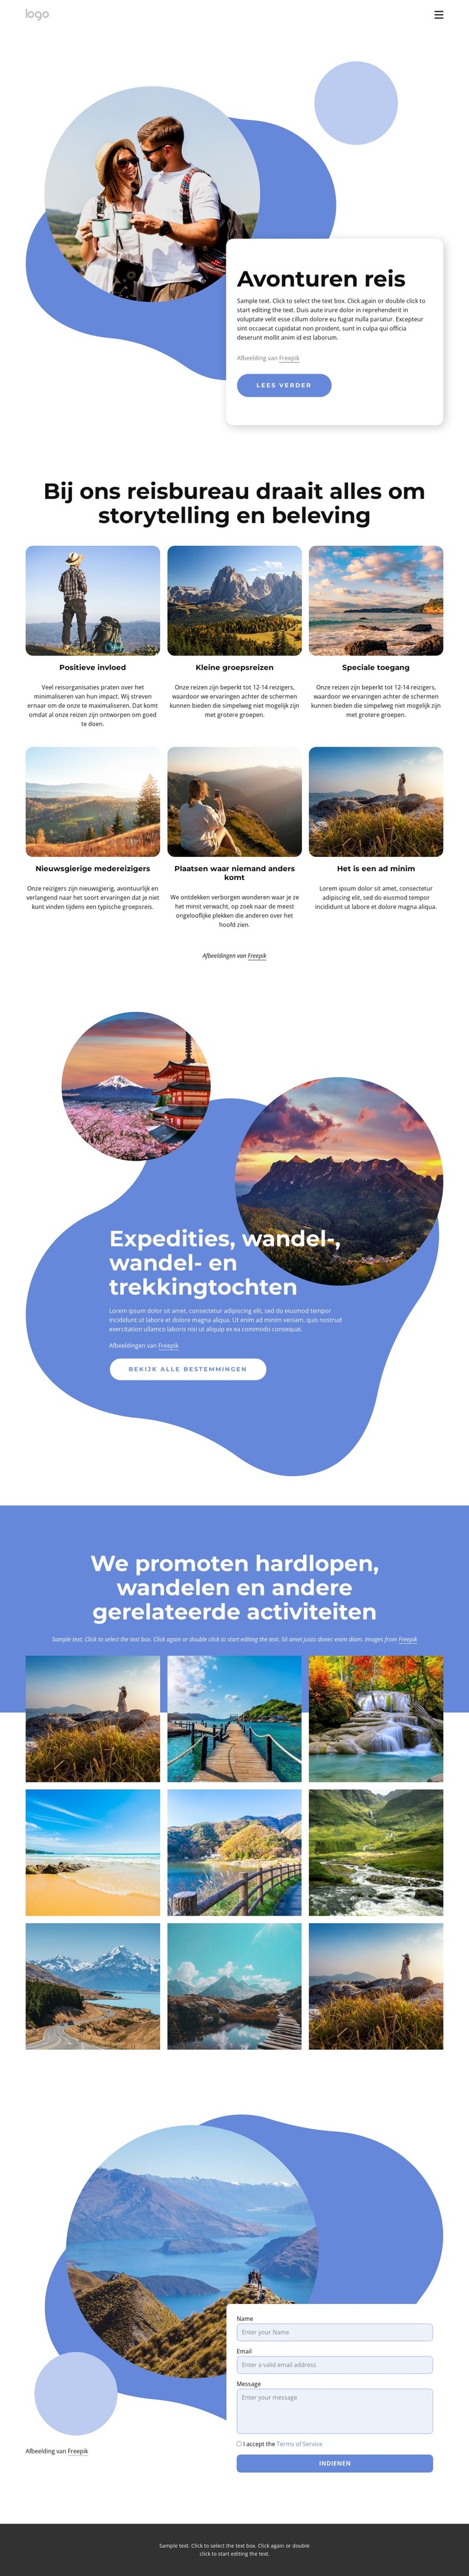 Agentschap gespecialiseerd in luxe avontuurlijke reizen WordPress-thema